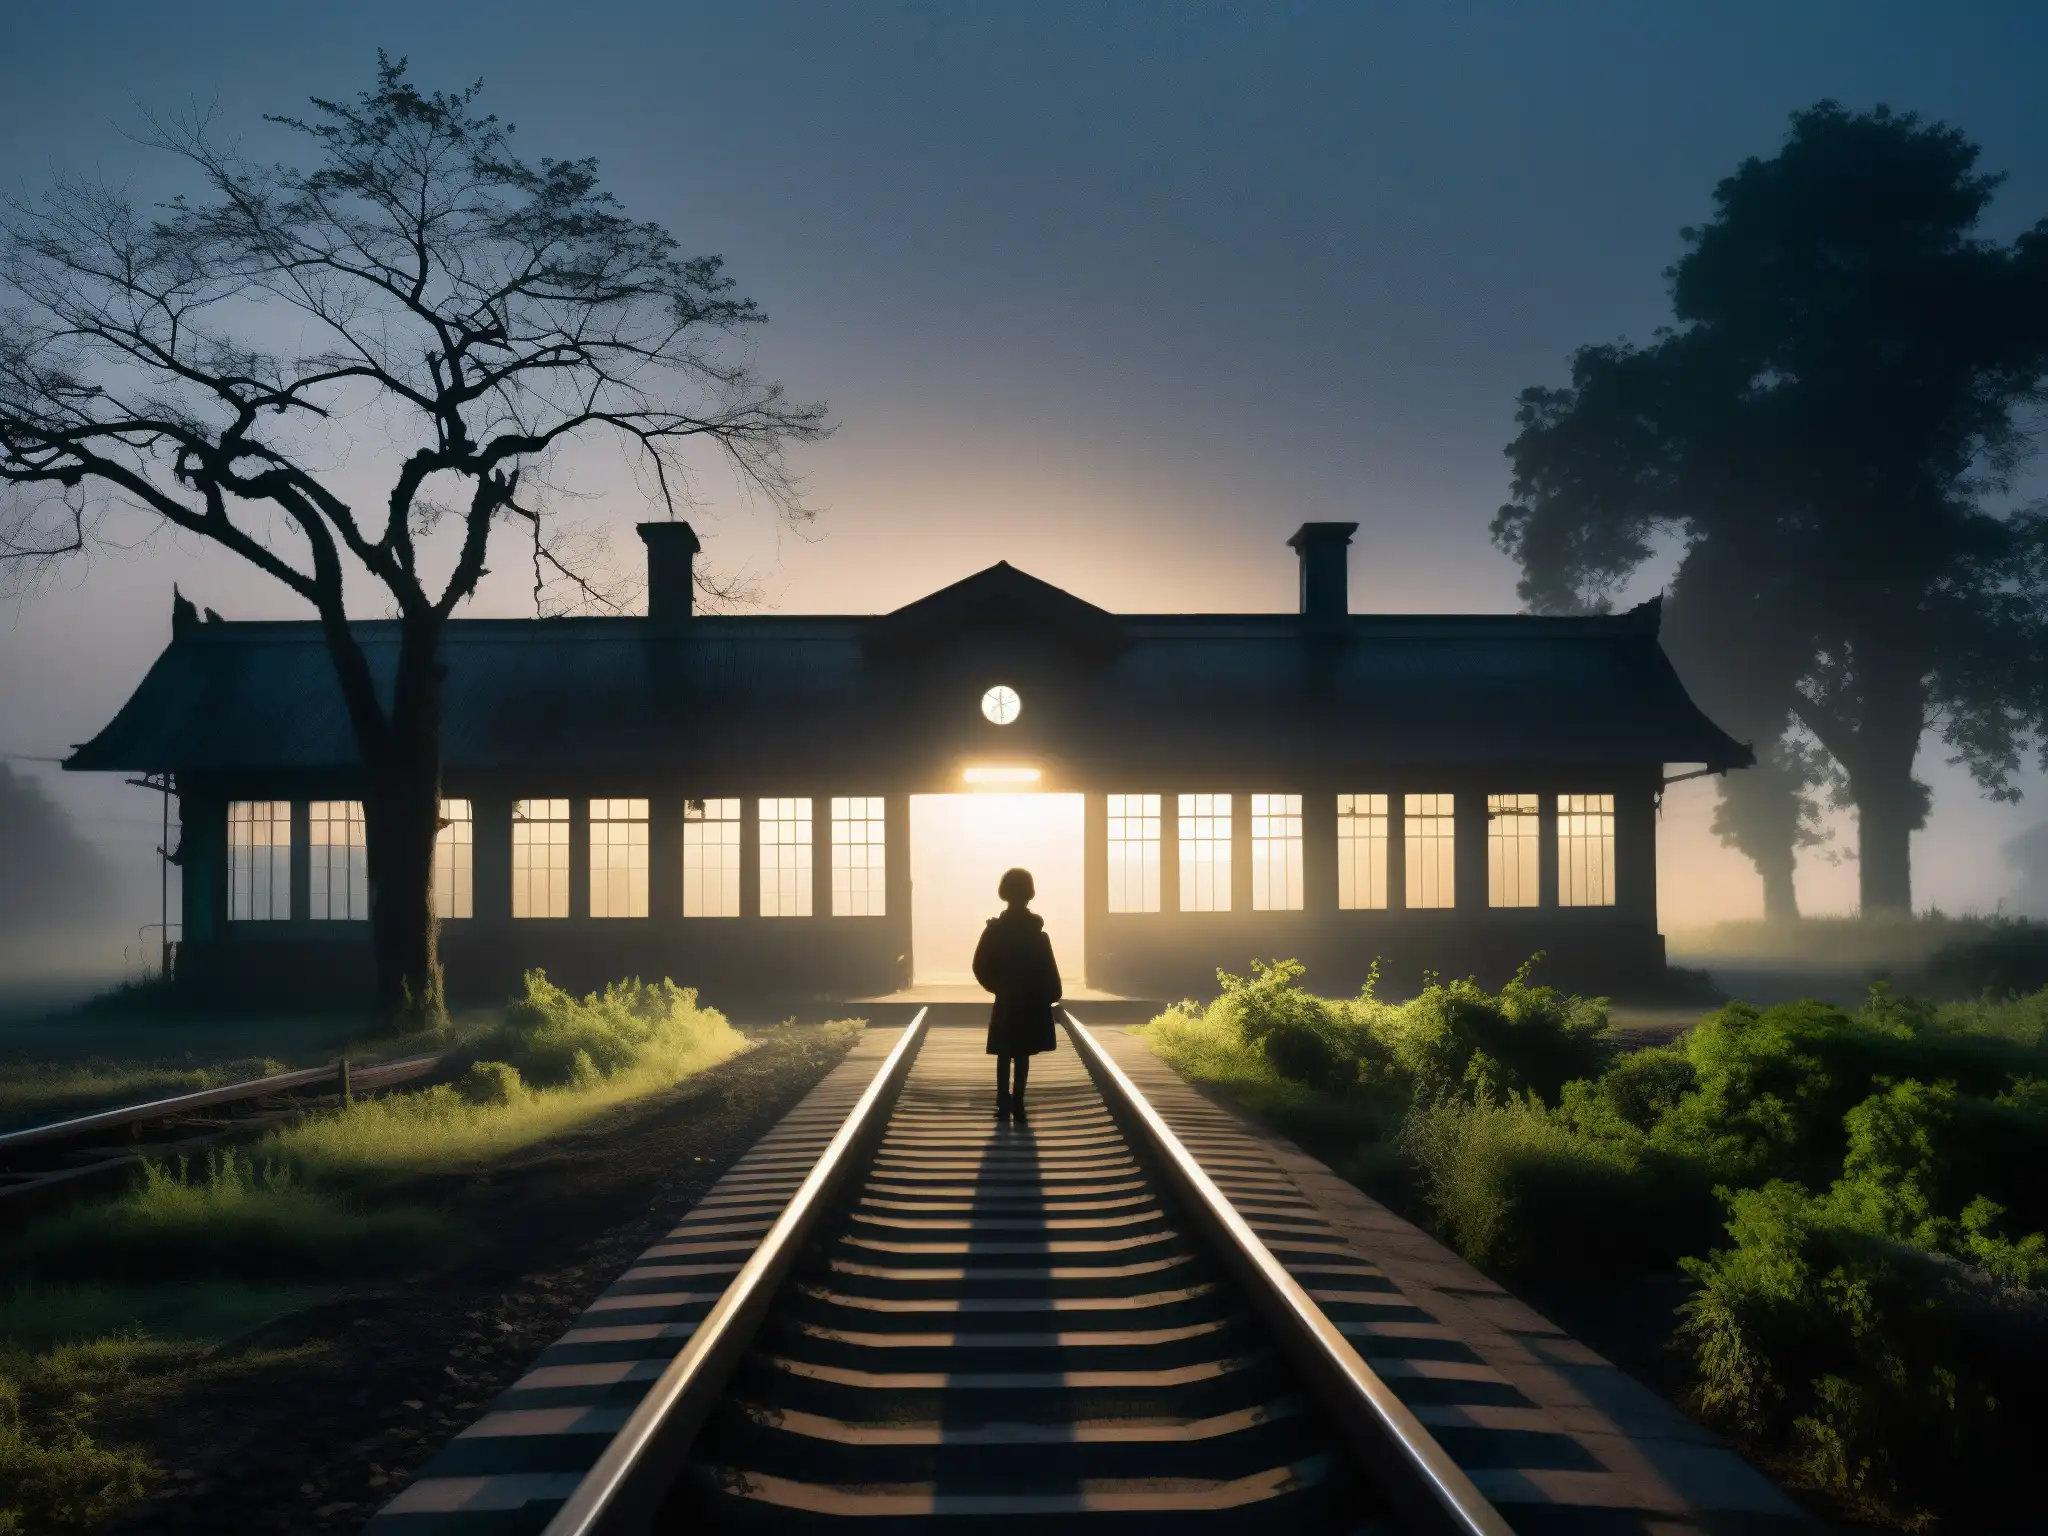 Un niño fantasmal en la estación de ferrocarril Begunkodor, rodeado de niebla y misterio